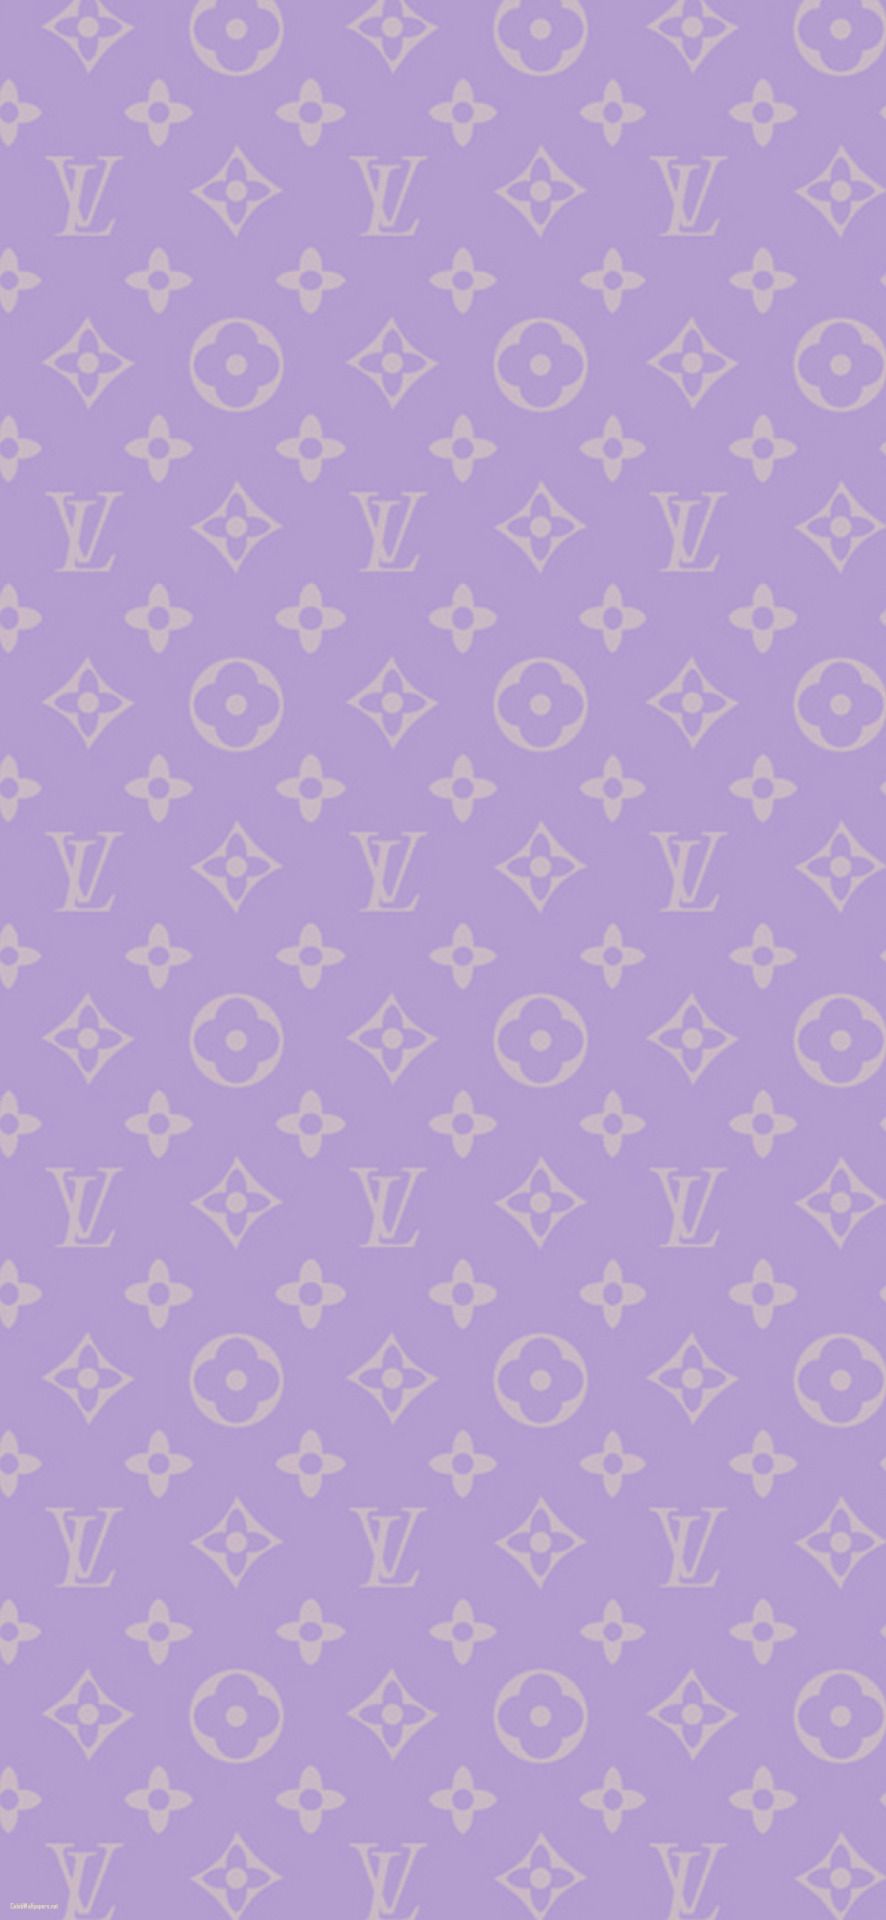 Louis Vuitton purple iPhone wallpaper - Louis Vuitton